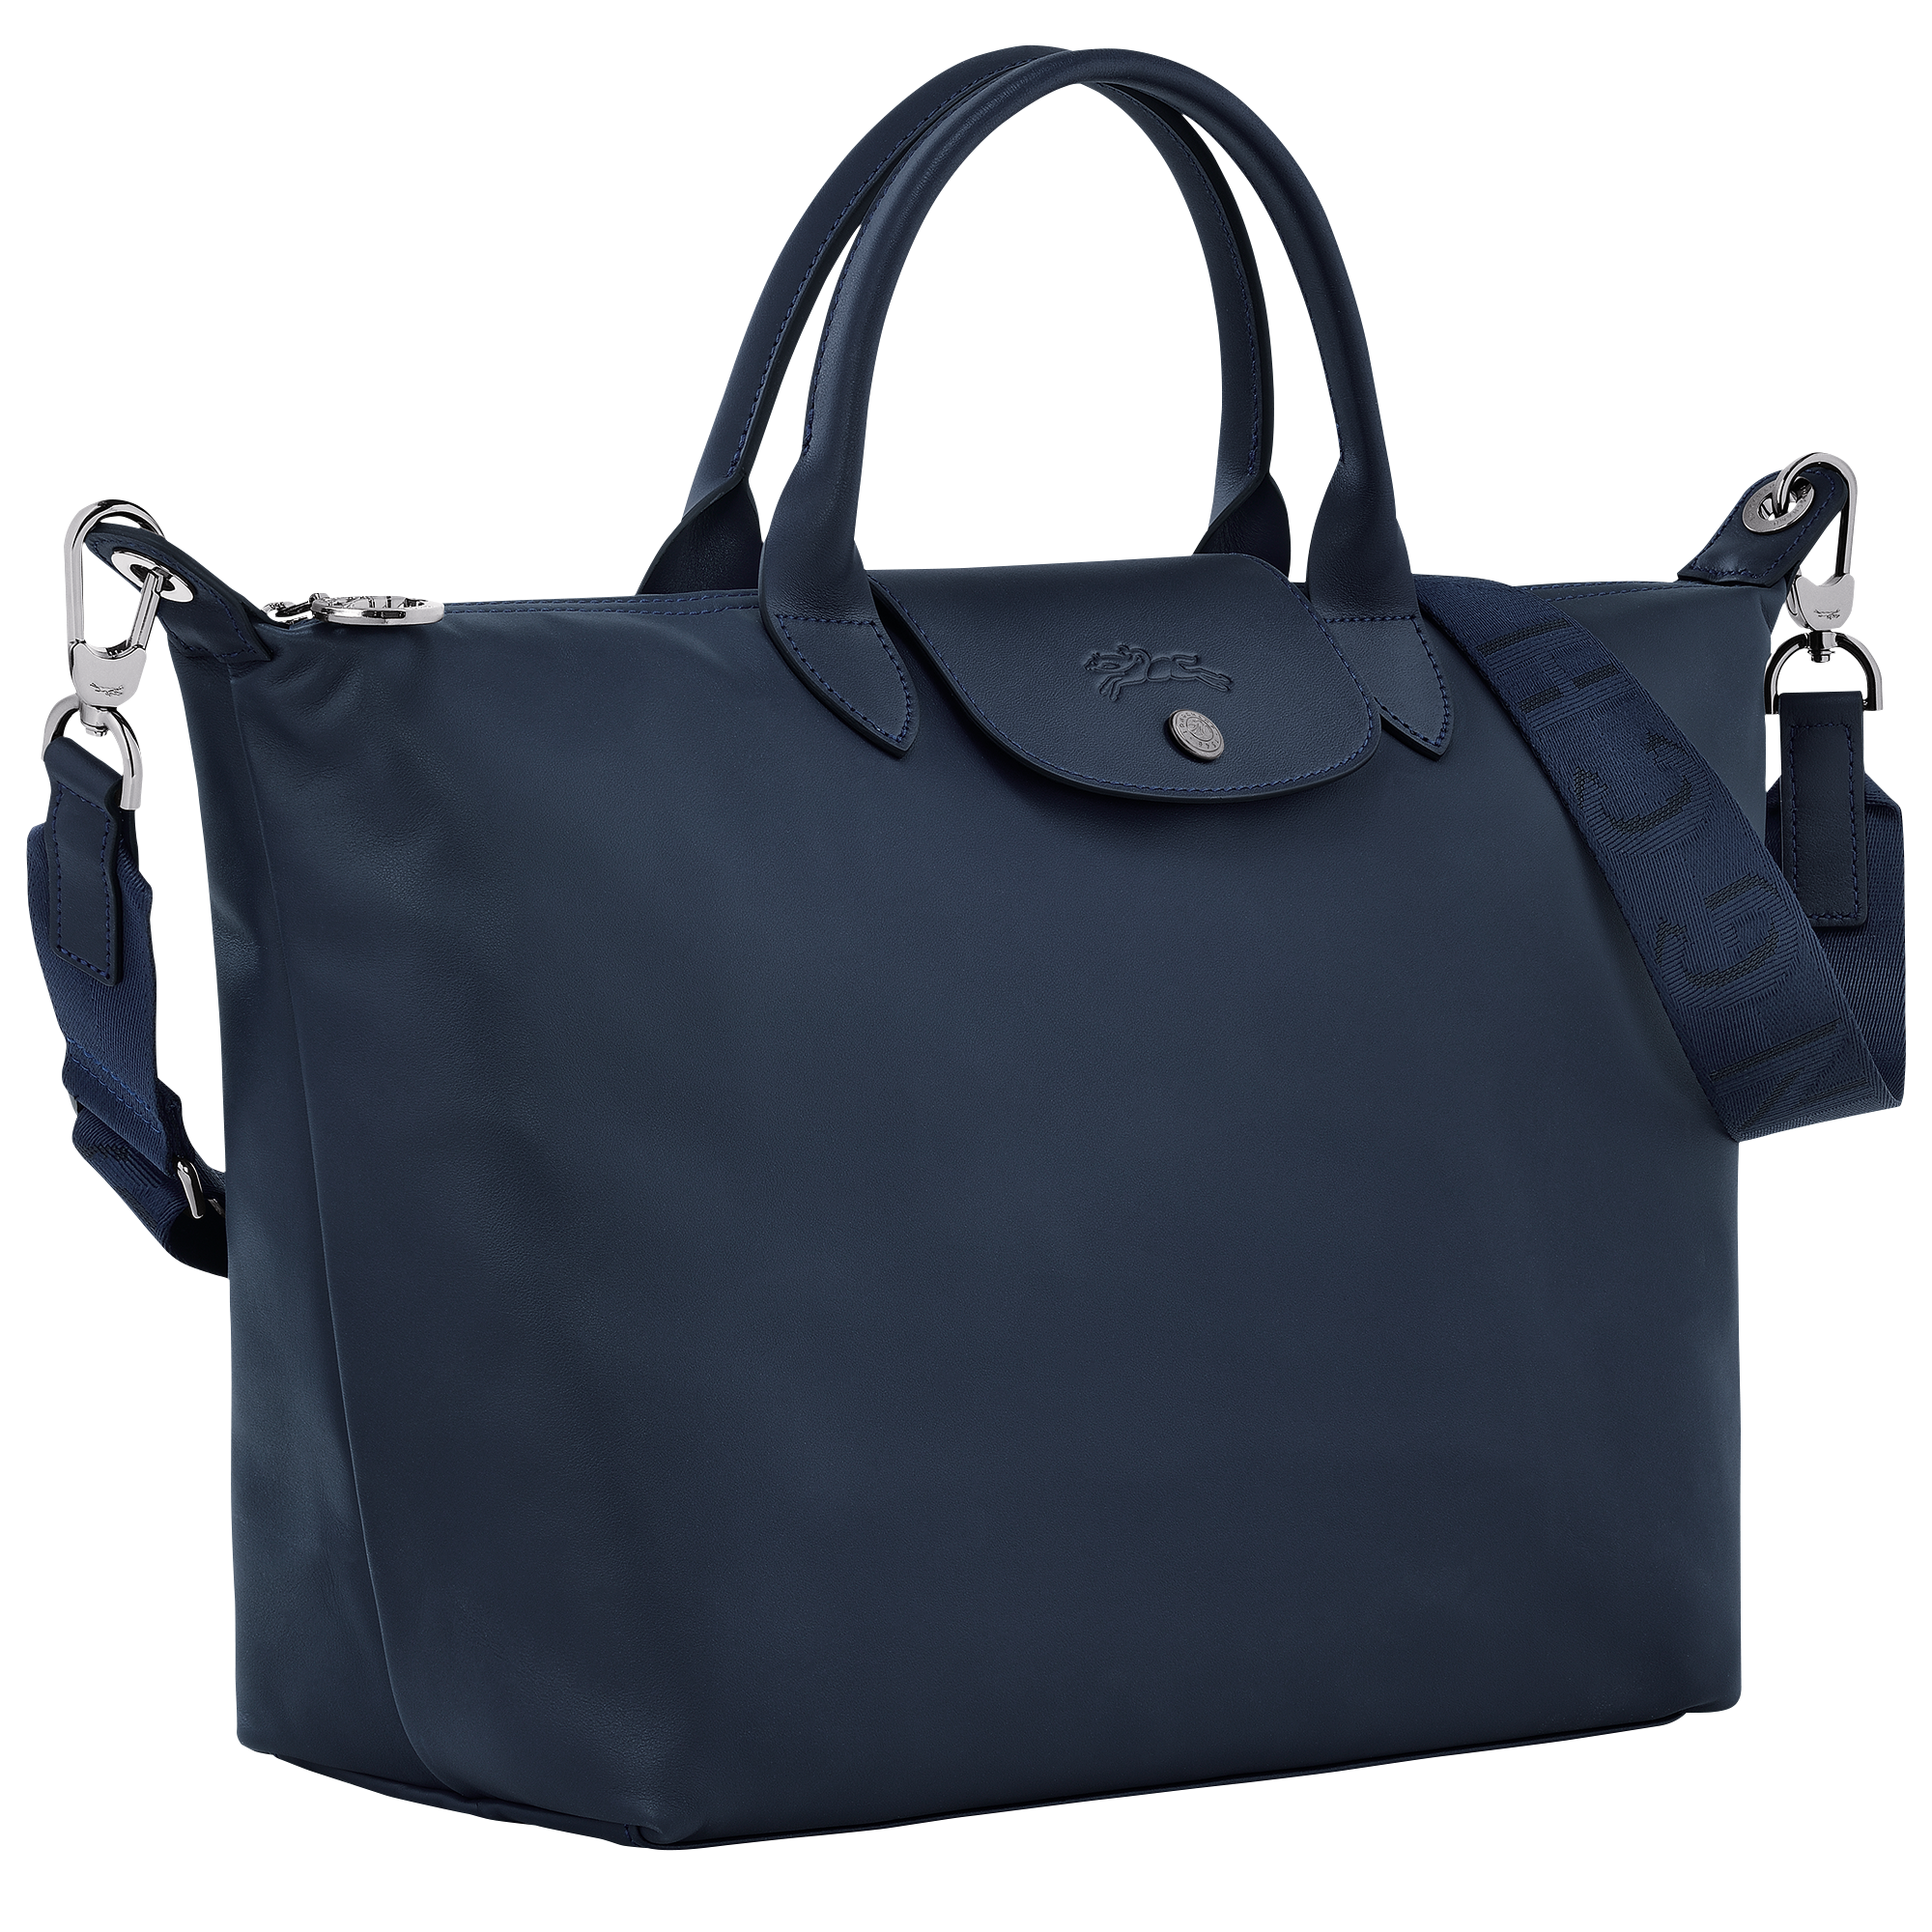 Le Pliage Xtra Handbag L, Navy